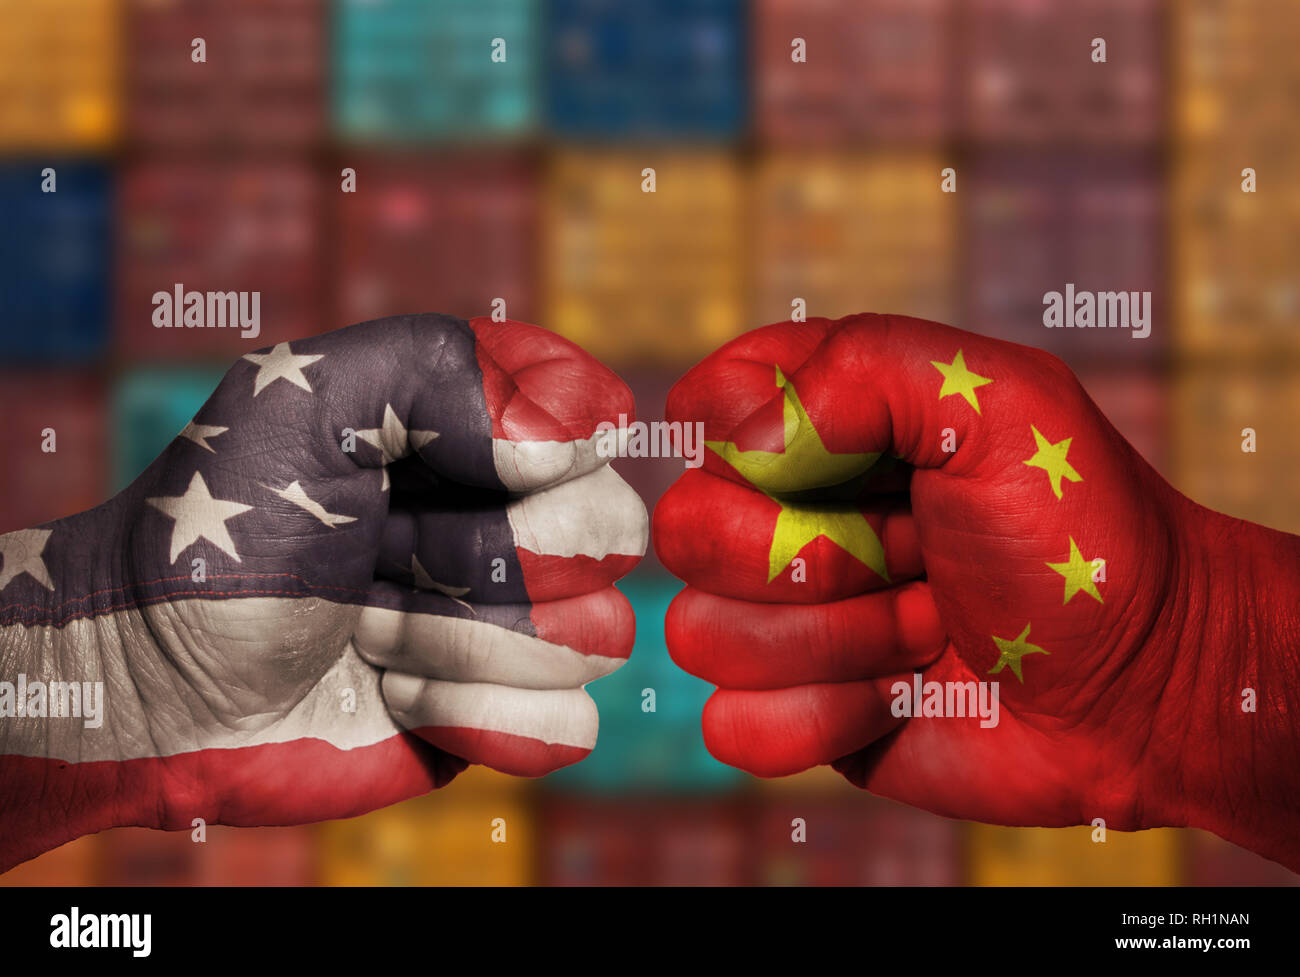 USA et Chine Chinese fist en compétition dans une entreprise commerciale économique bataille guerre commerciale avec des conteneurs d'expédition dans l'arrière-plan. L'image utilise des Etats-Unis et la Chine Banque D'Images